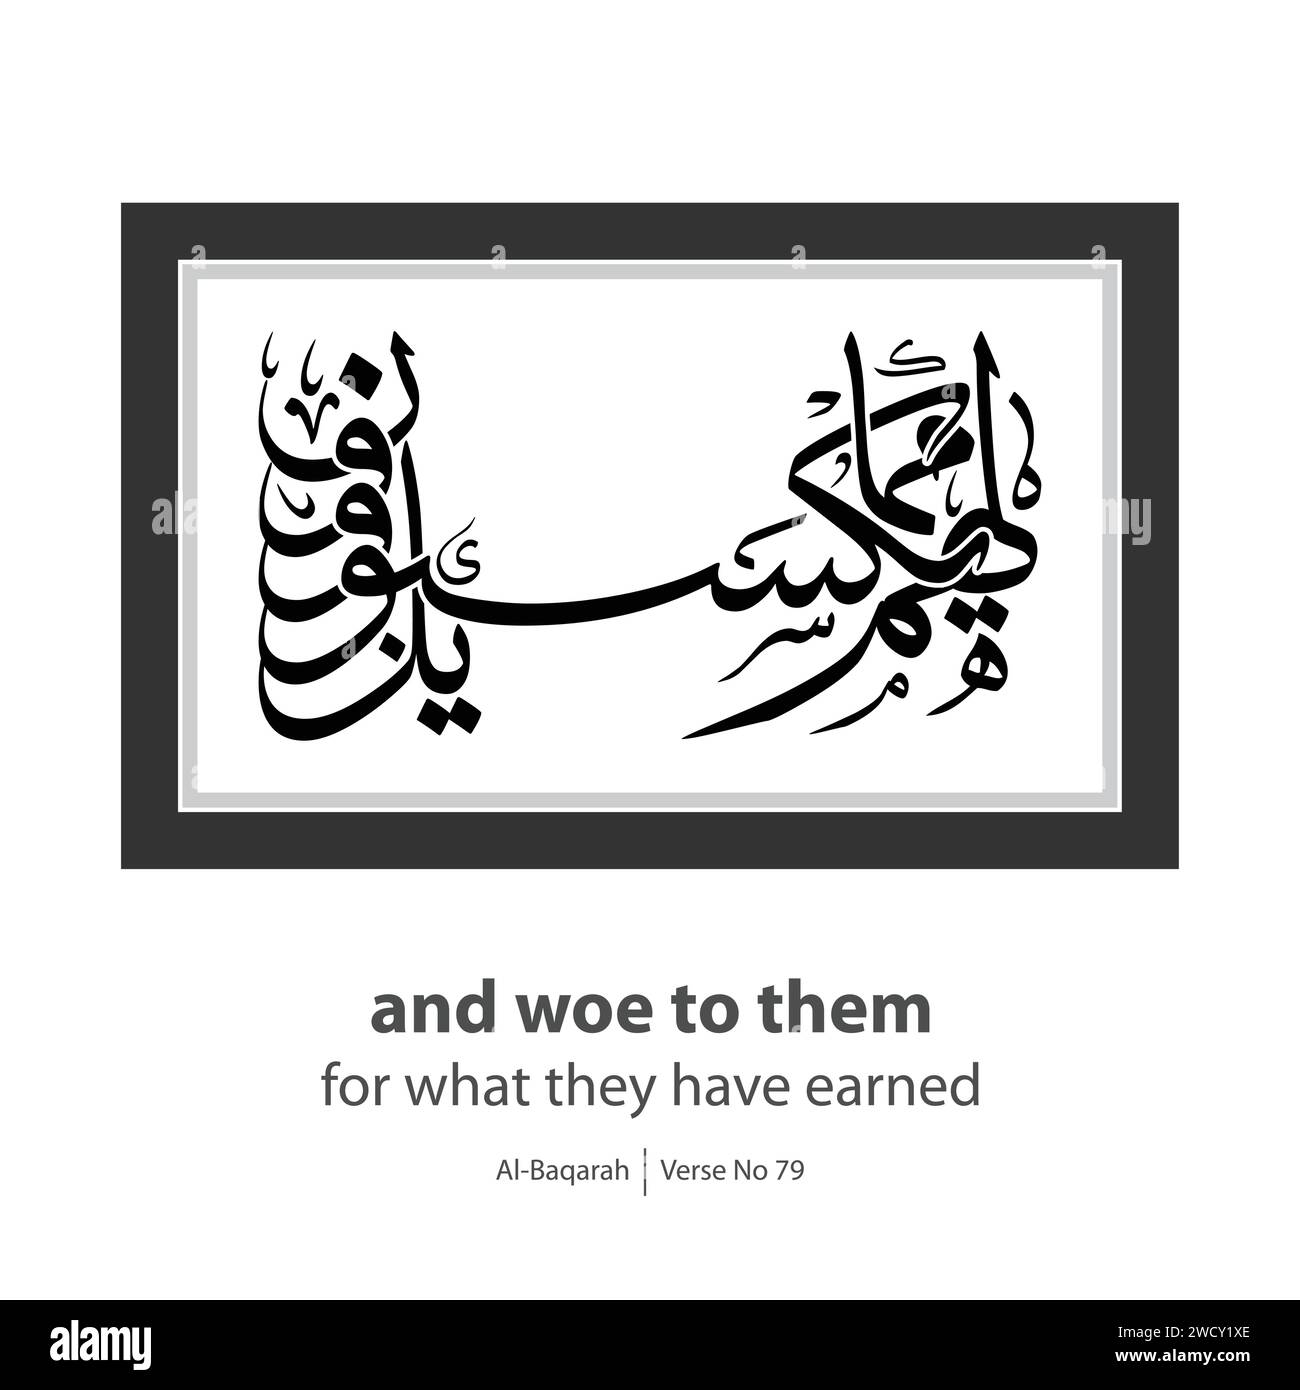 Calligraphie de malheur à eux, anglais traduit par, et malheur à eux pour ce qu'ils ont gagné, verset n ° 79 d'Al-Baqarah Illustration de Vecteur